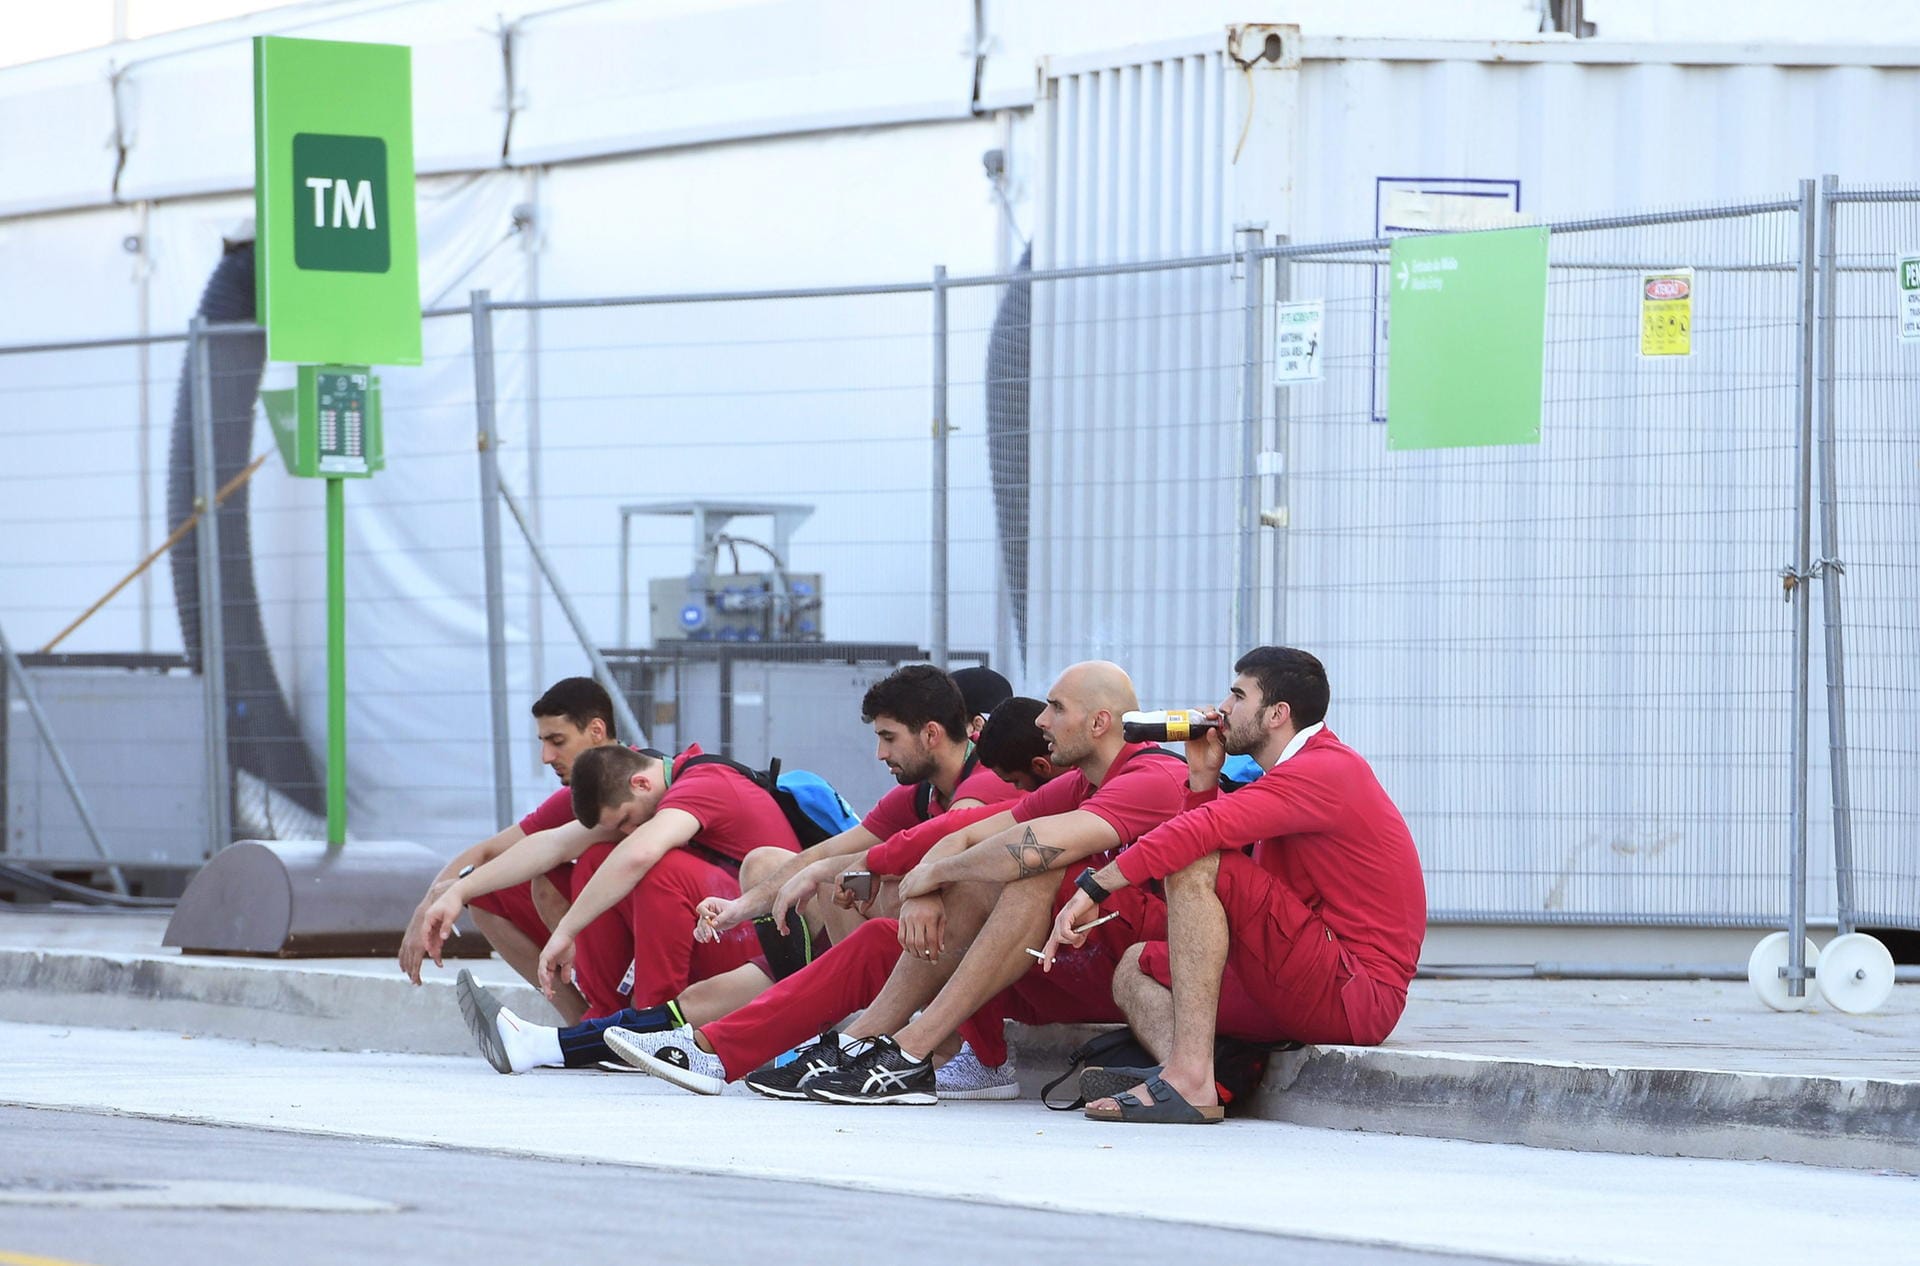 Für Katars Handballer ist das Turnier hingegen zu Ende. Dementsprechend geknickt warten die Spieler nach dem Siel gegen Deutschland auf den Bus, der das Team zurück ins Olympische Dorf bringt.